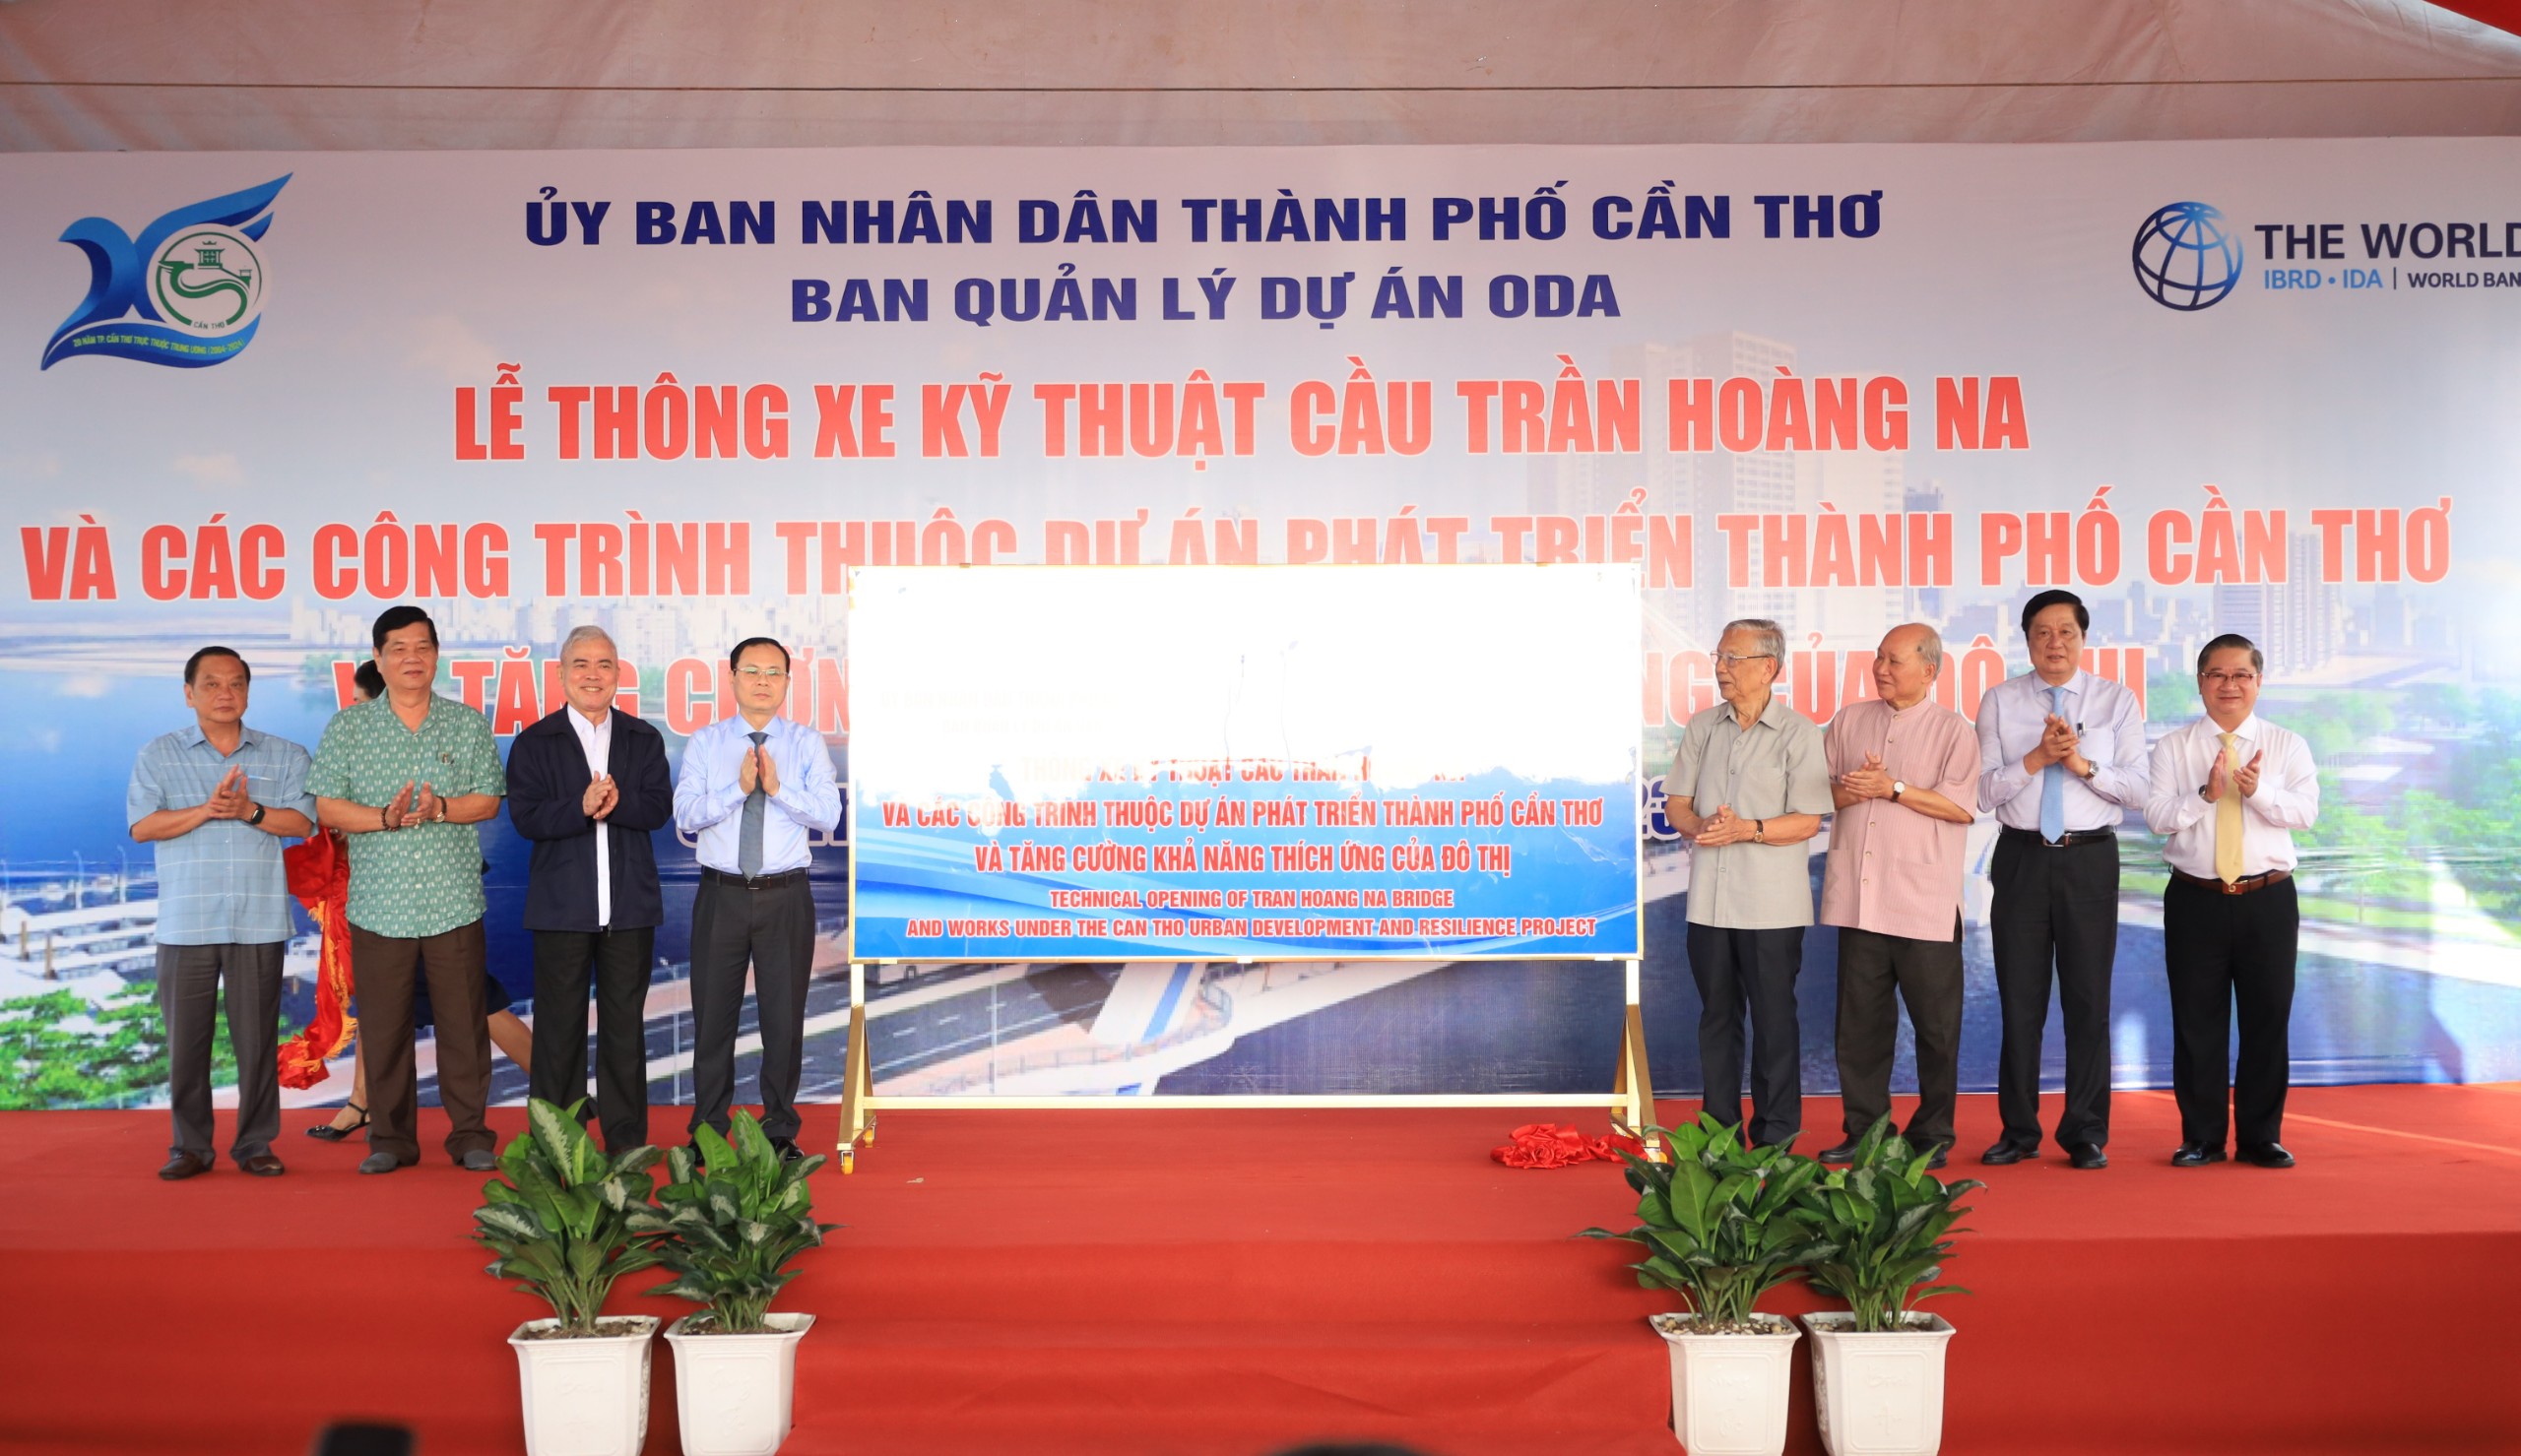 Thông xe kỹ thuật cầu Trần Hoàng Na bắc qua sông Cần Thơ. Đây là một trong những công trình nhằm chào mừng kỷ niệm 20 năm TP Cần Thơ trực thuộc Trung ương (1/1/2004 – 1/1/2024).